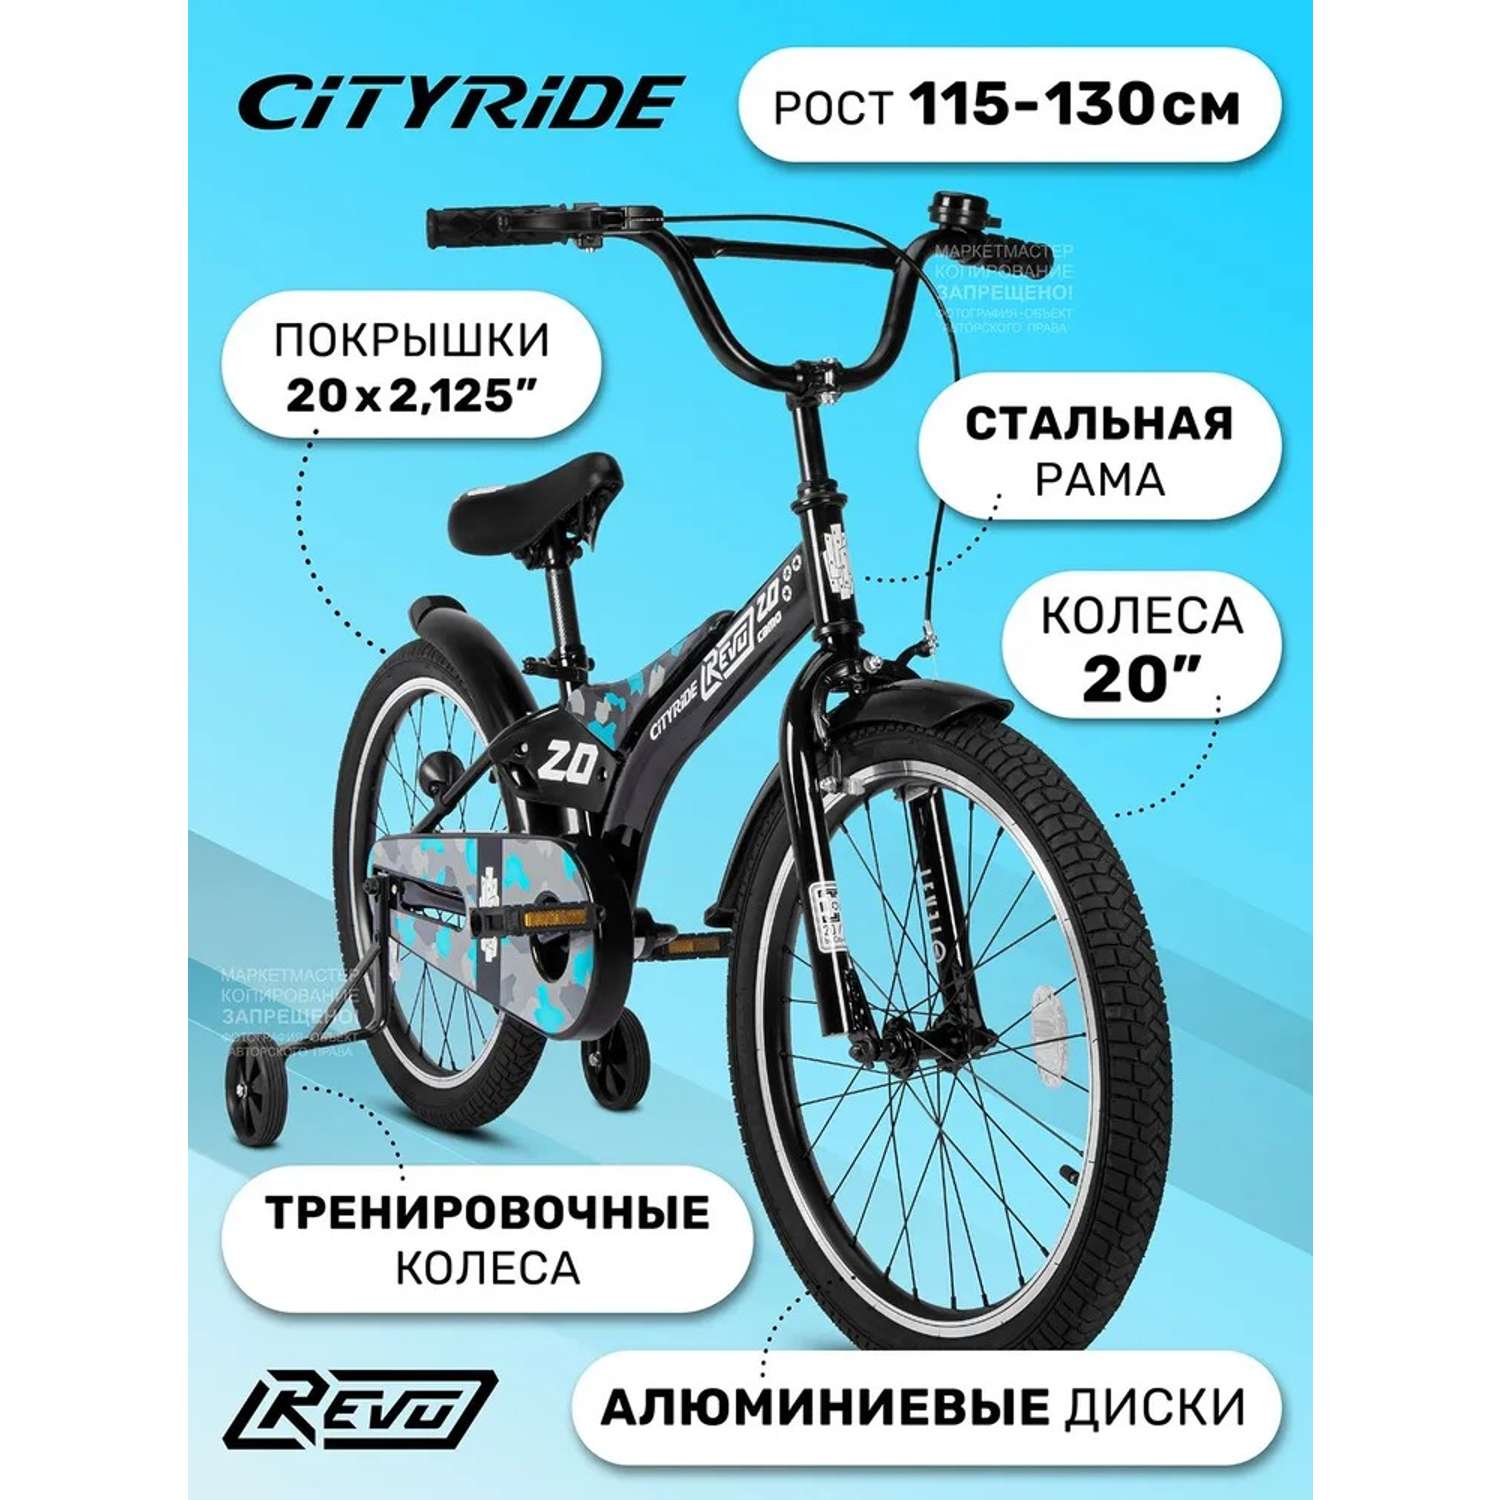 Детский велосипед CITYRIDE Двухколесный Cityride REVO Рама сталь Кожух цепи 100% Диски алюминий 20 Втулки сталь - фото 1